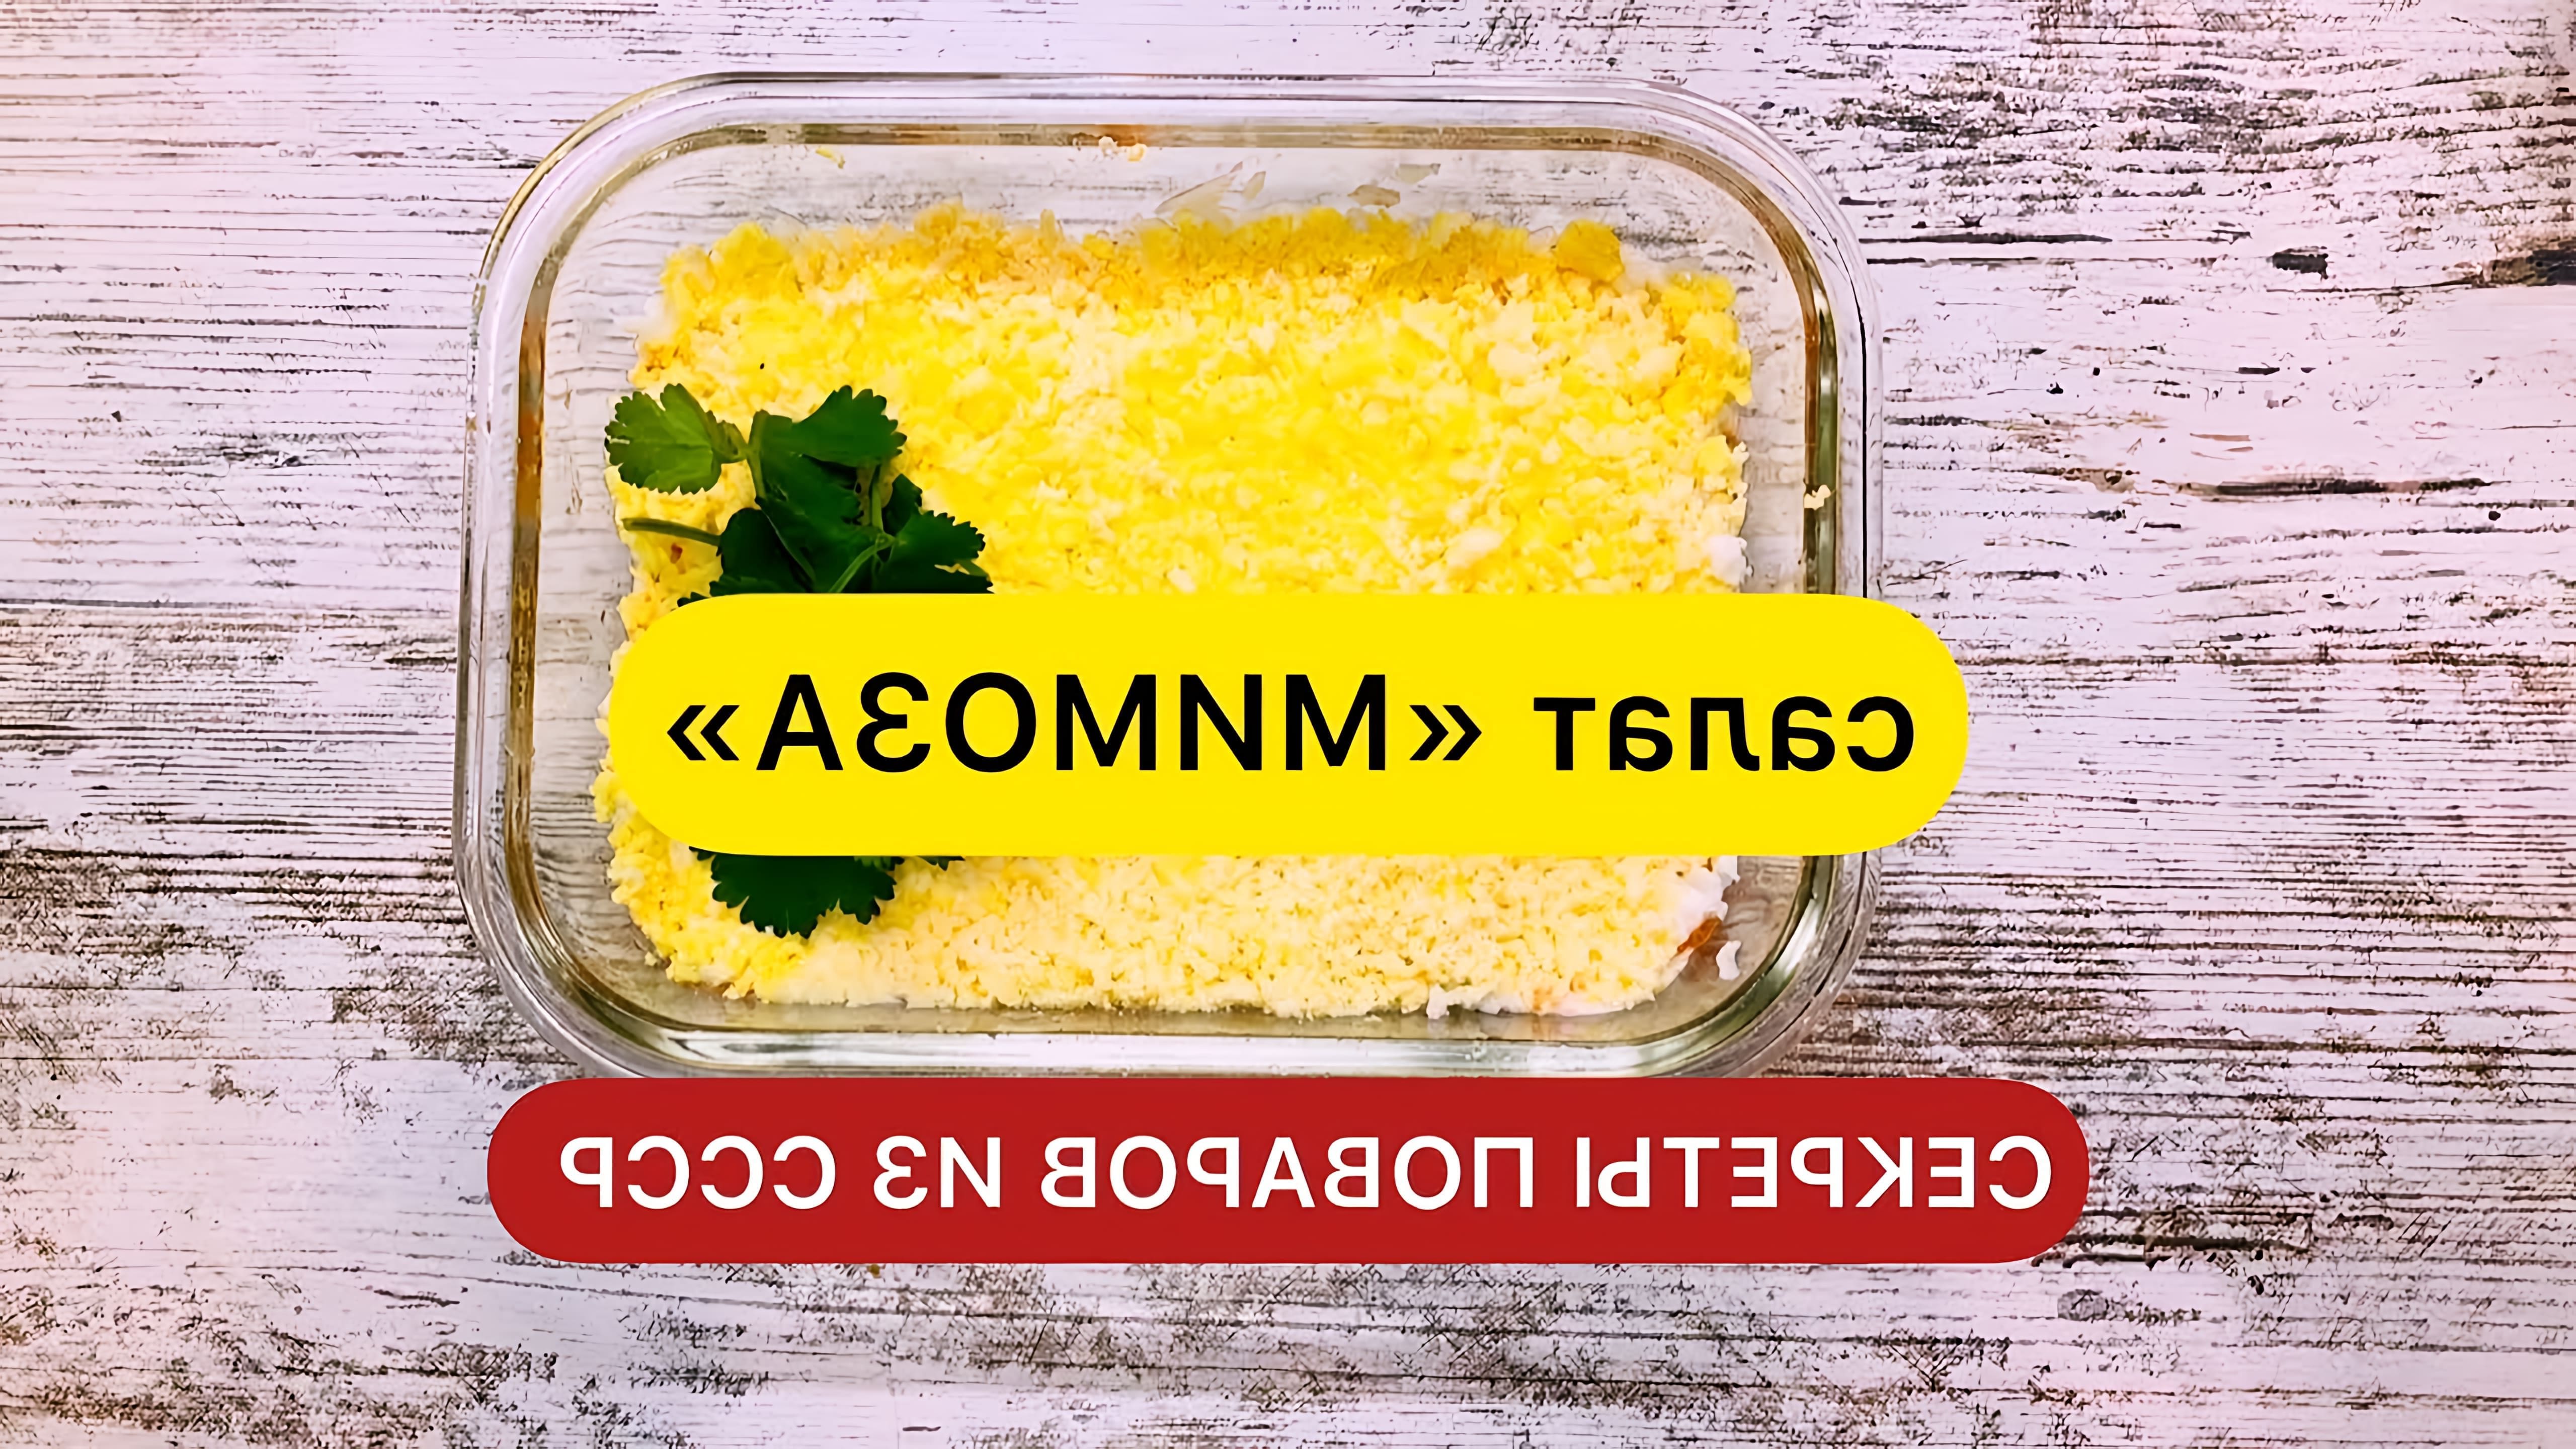 В этом видео демонстрируется рецепт приготовления салата "Мимоза"